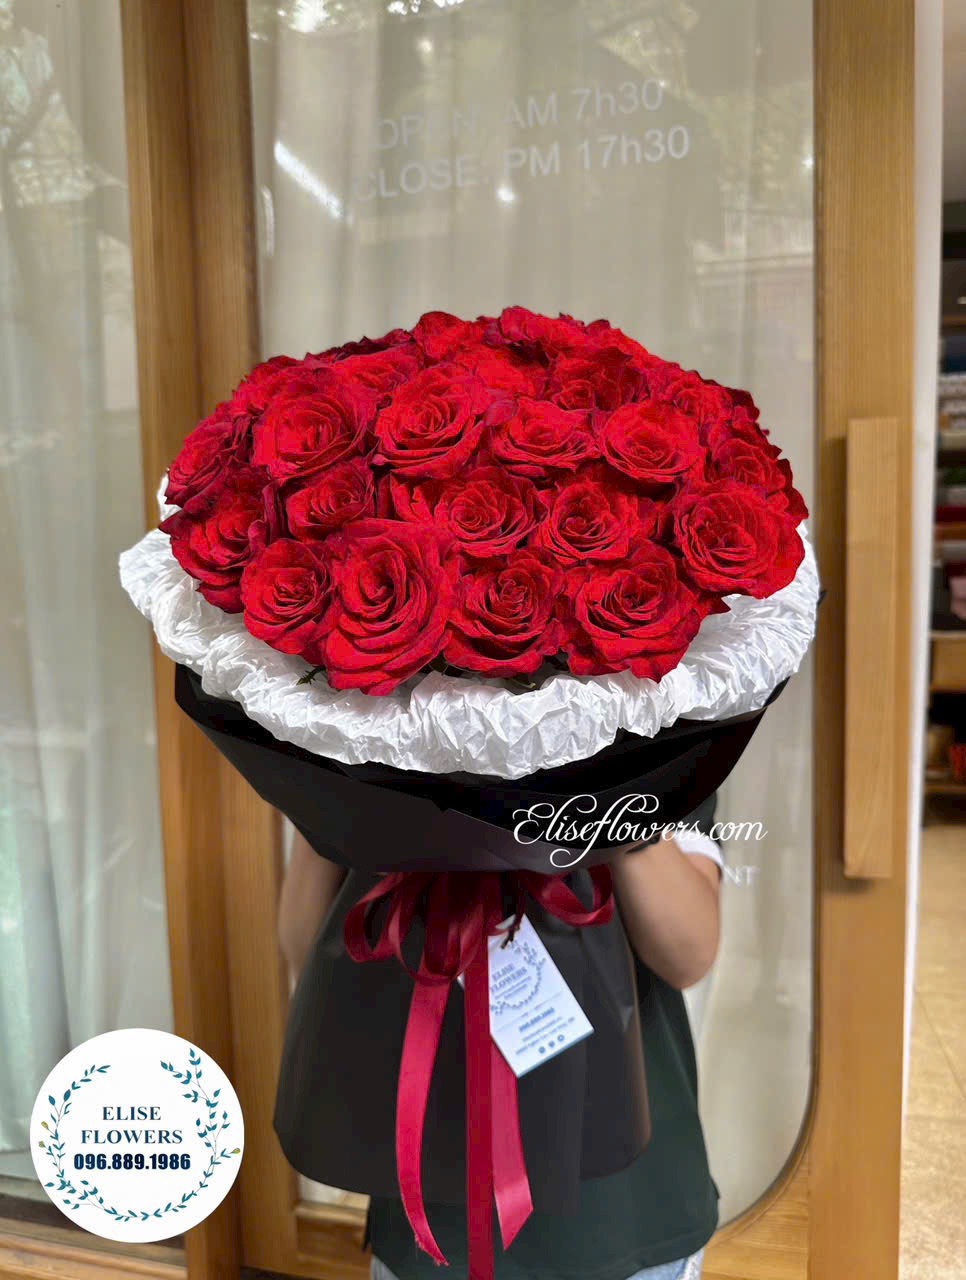 Bó hoa hồng đỏ đẹp ở HÀ Nội. Đặt mua bó hoa hồng đỏ đẹp ở Hà Nội